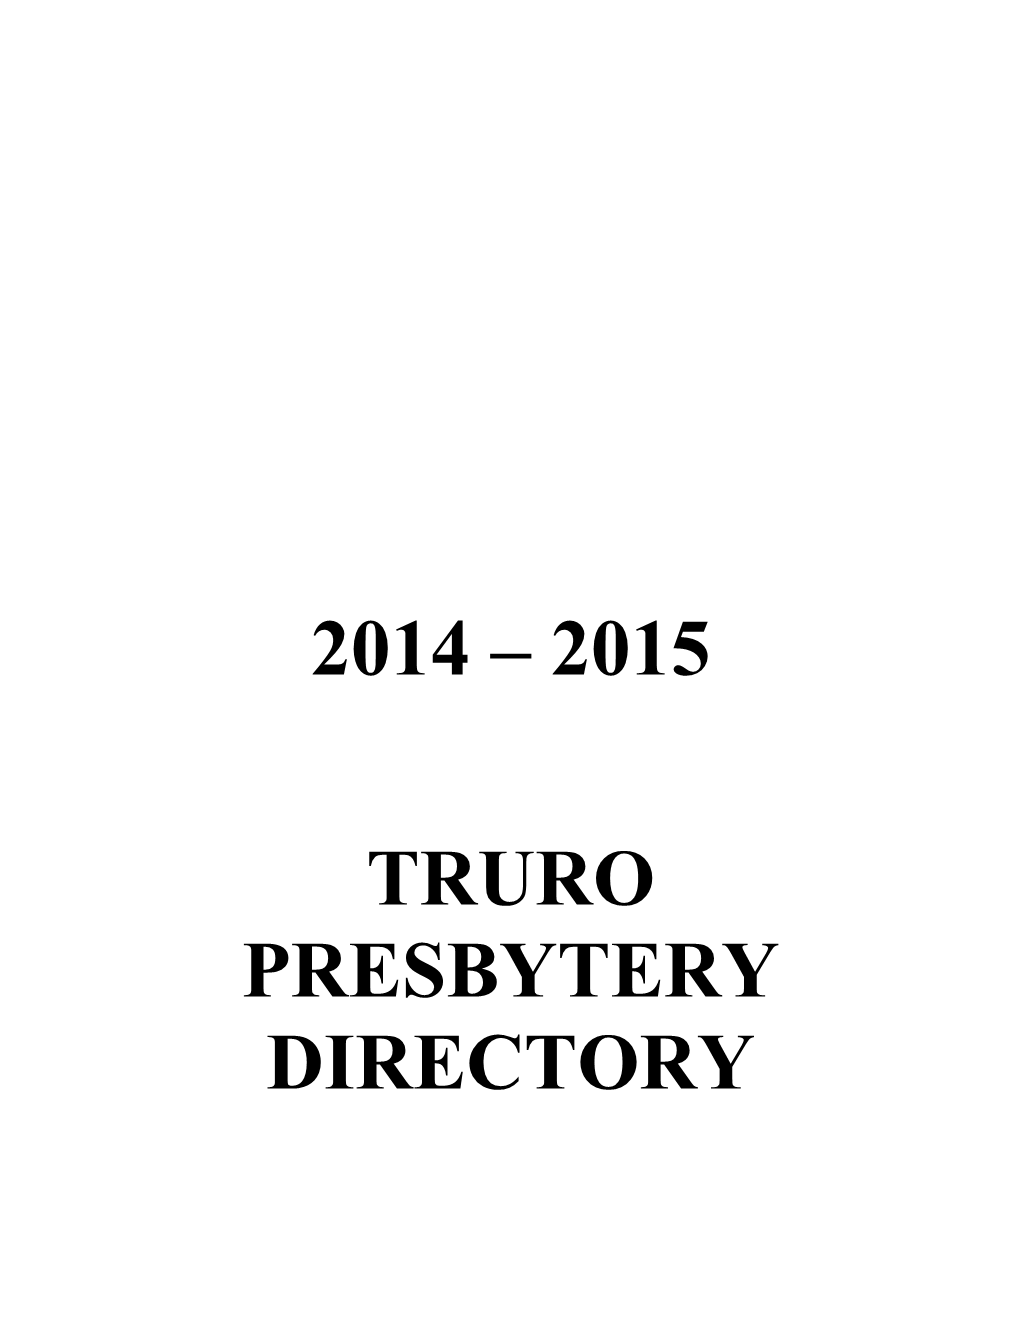 Truro Presbytery